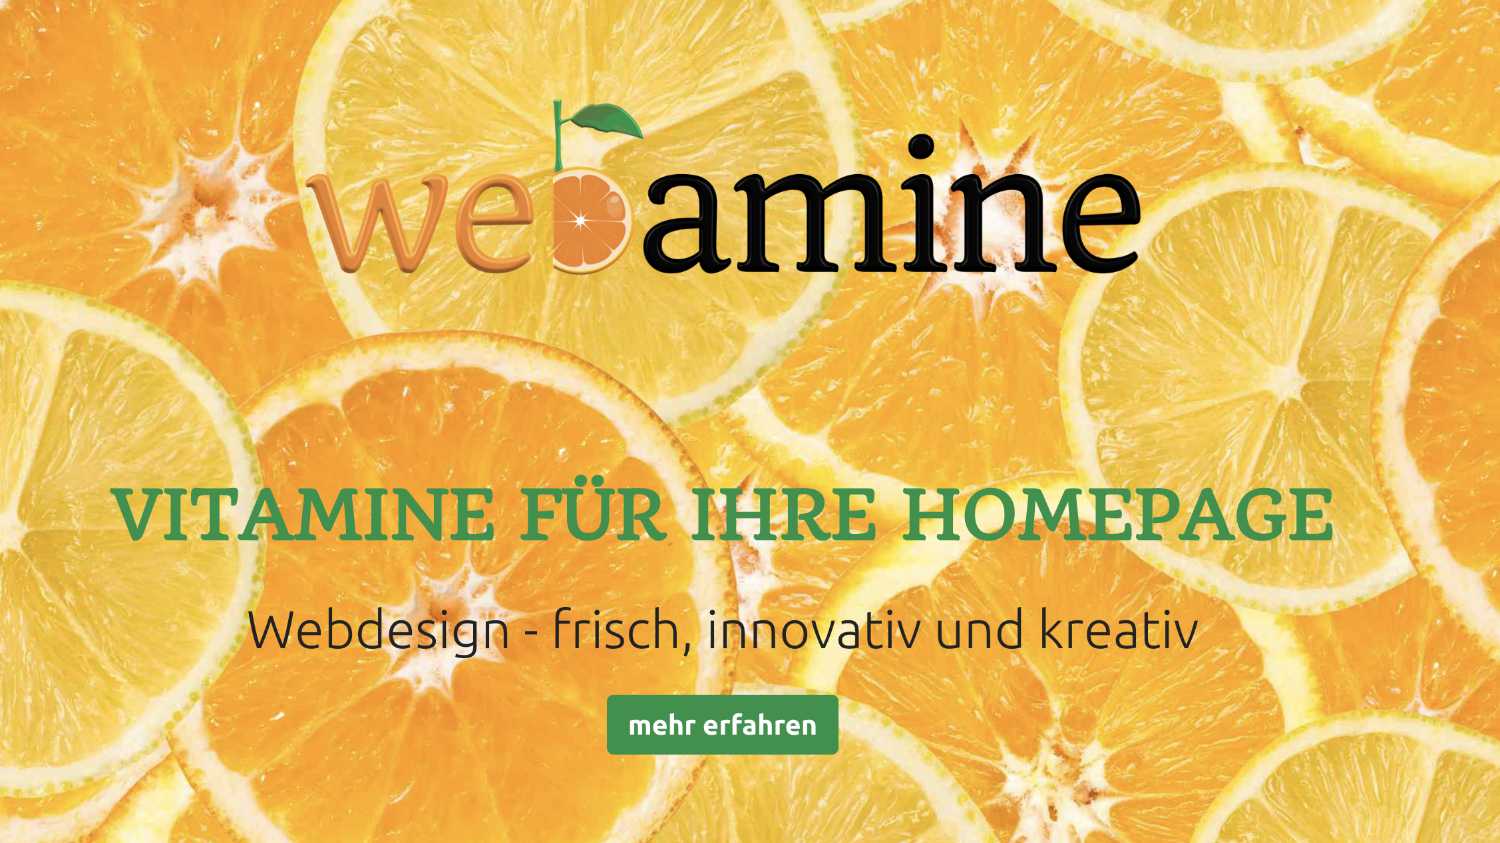 Bild der Startseite von webamine.de - Orangen im Hintergrund mit Schrift "Webamine - Vitamine für Ihre Homepage - Webdesign - frisch, innovativ und kreativ